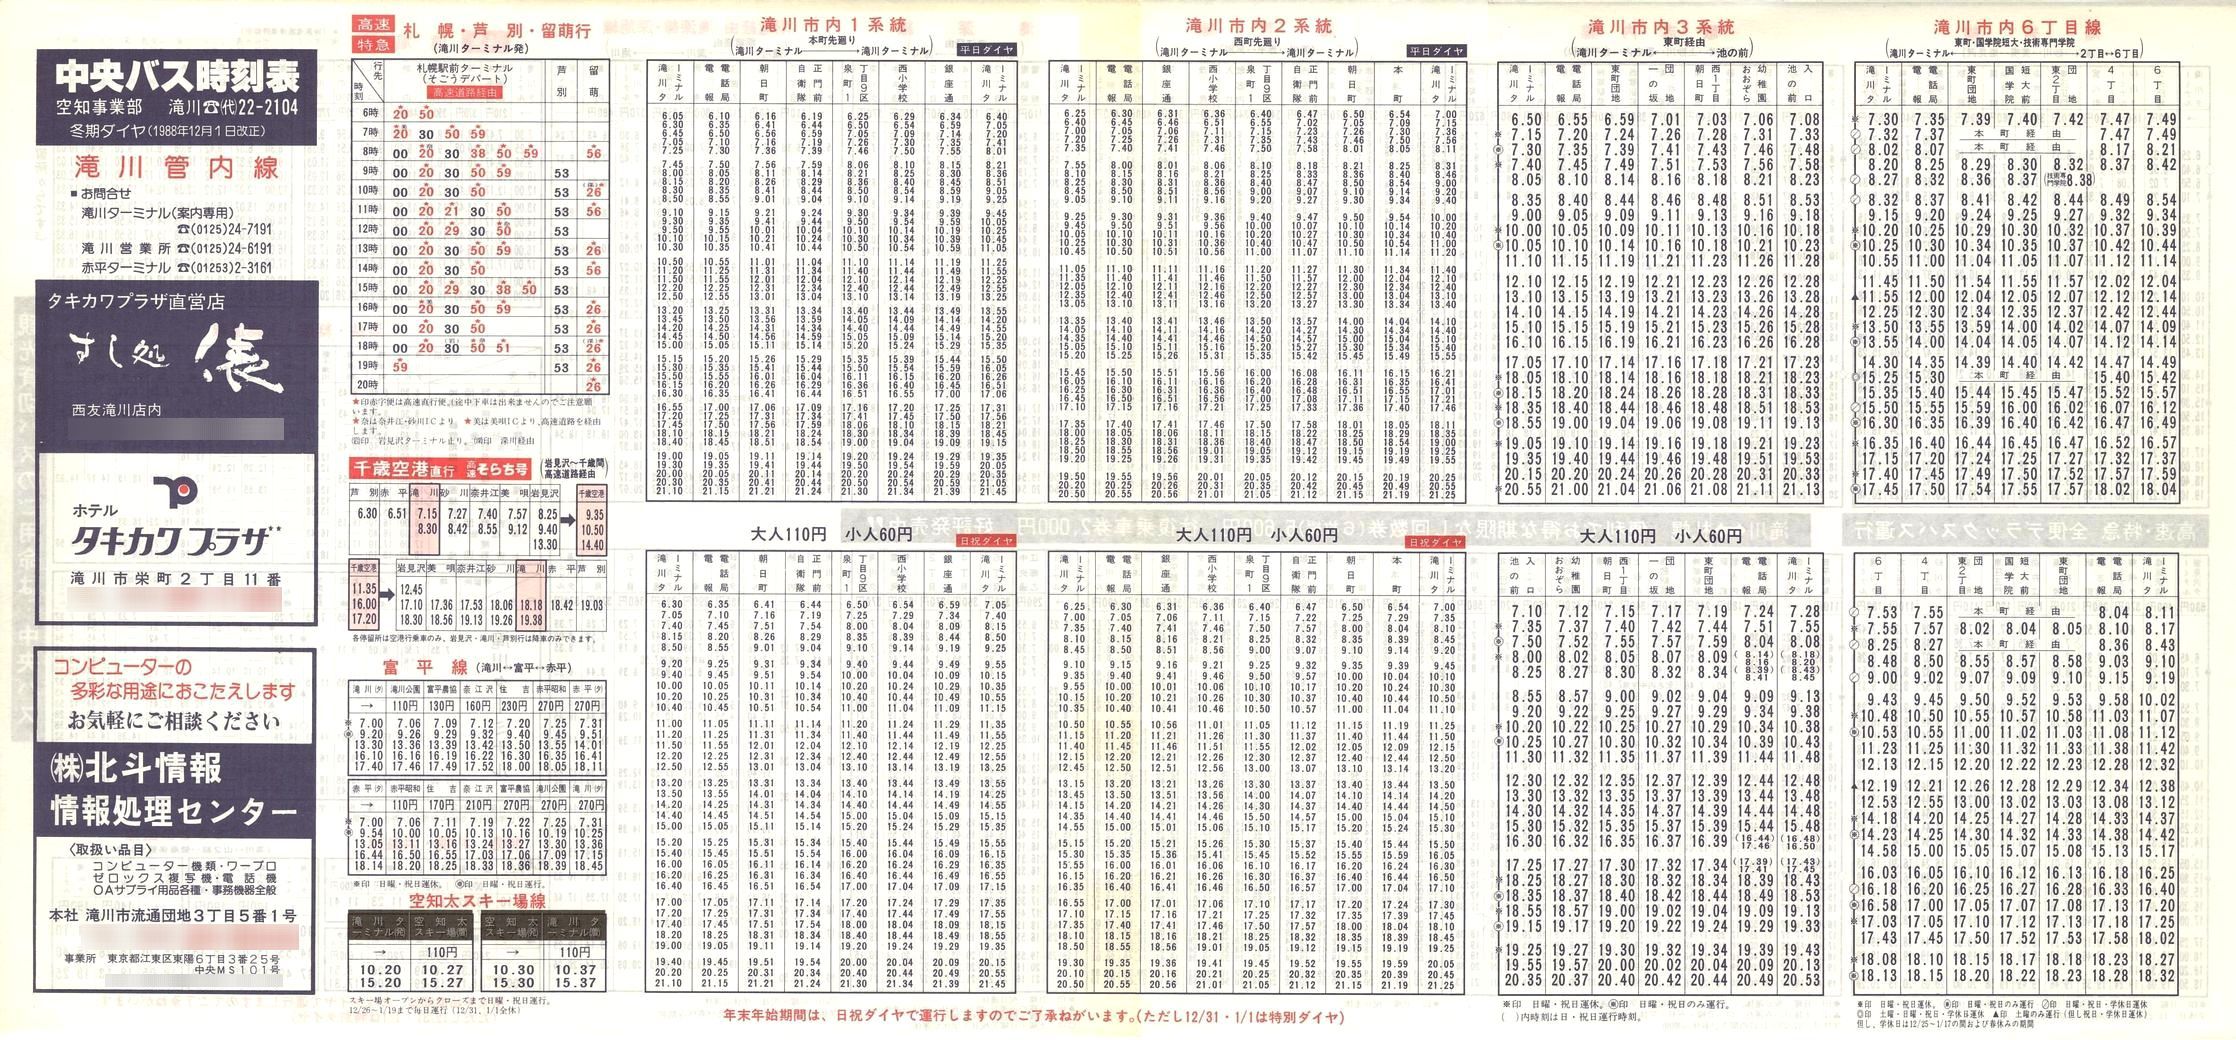 1988-12-01改正_北海道中央バス(空知)_滝川管内線時刻表表面